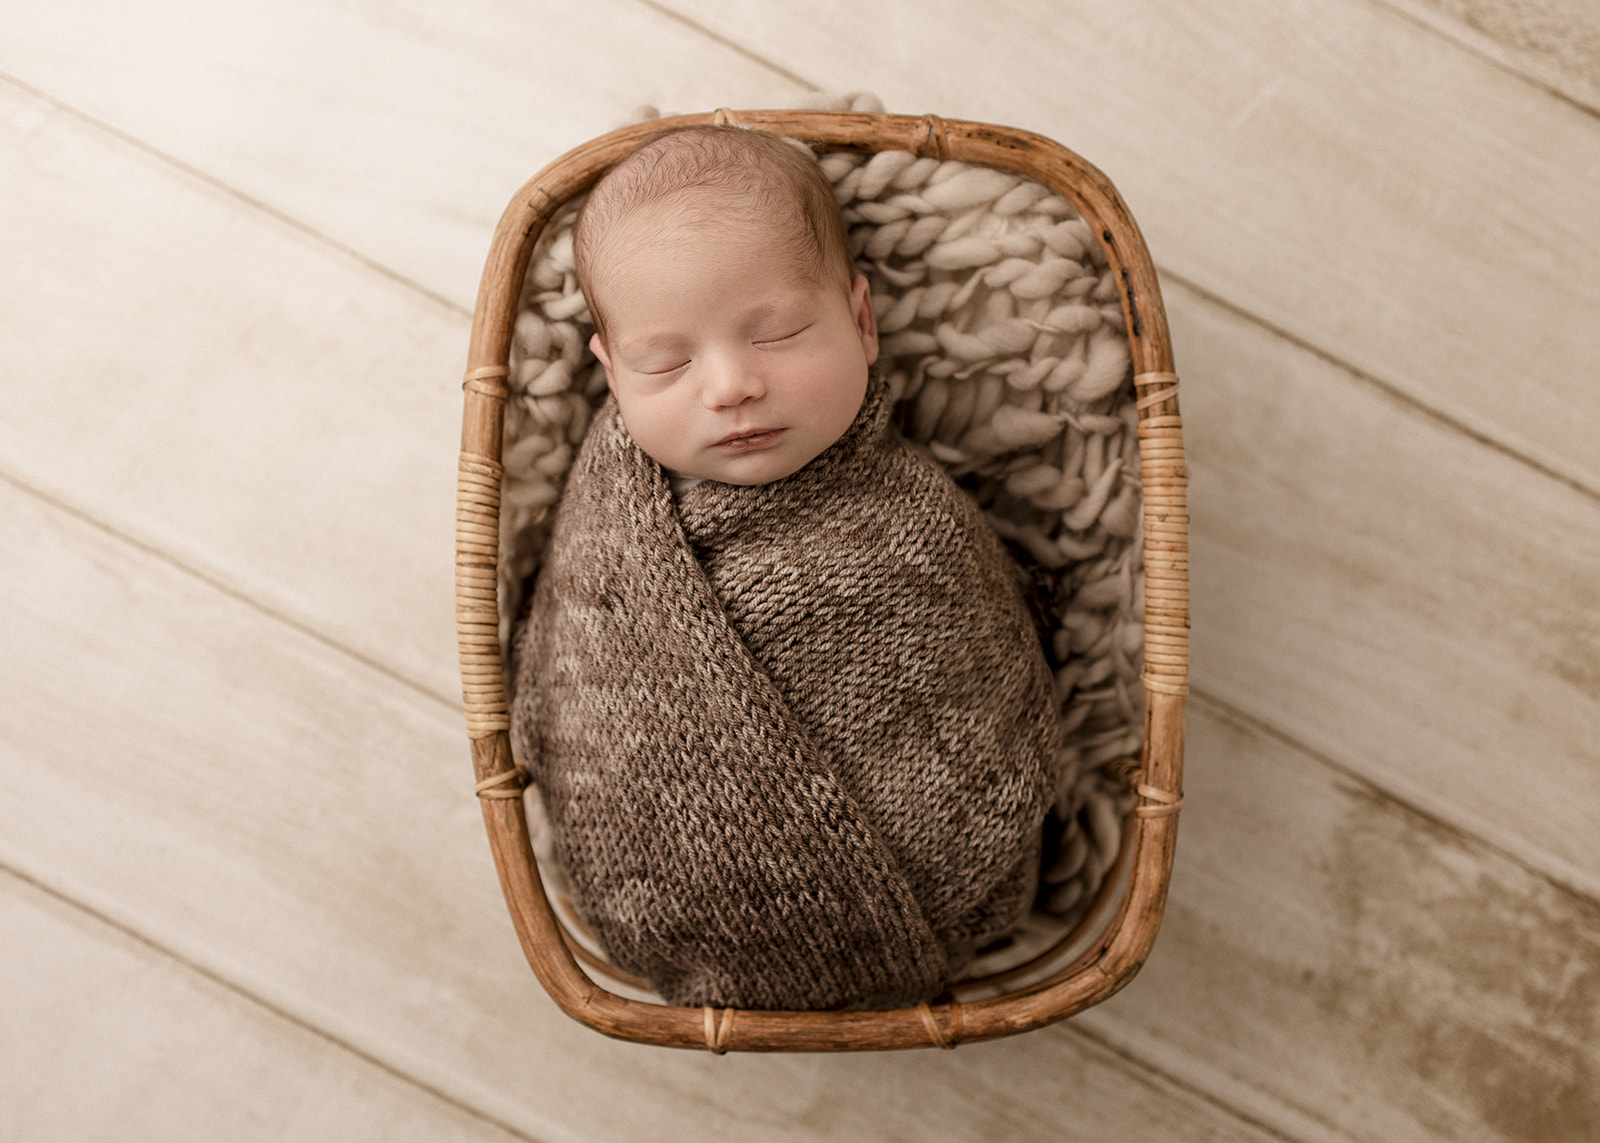 A newborn baby in a brown knit swaddle sleeps in a wicker basket Long Beach Prenatal Yoga